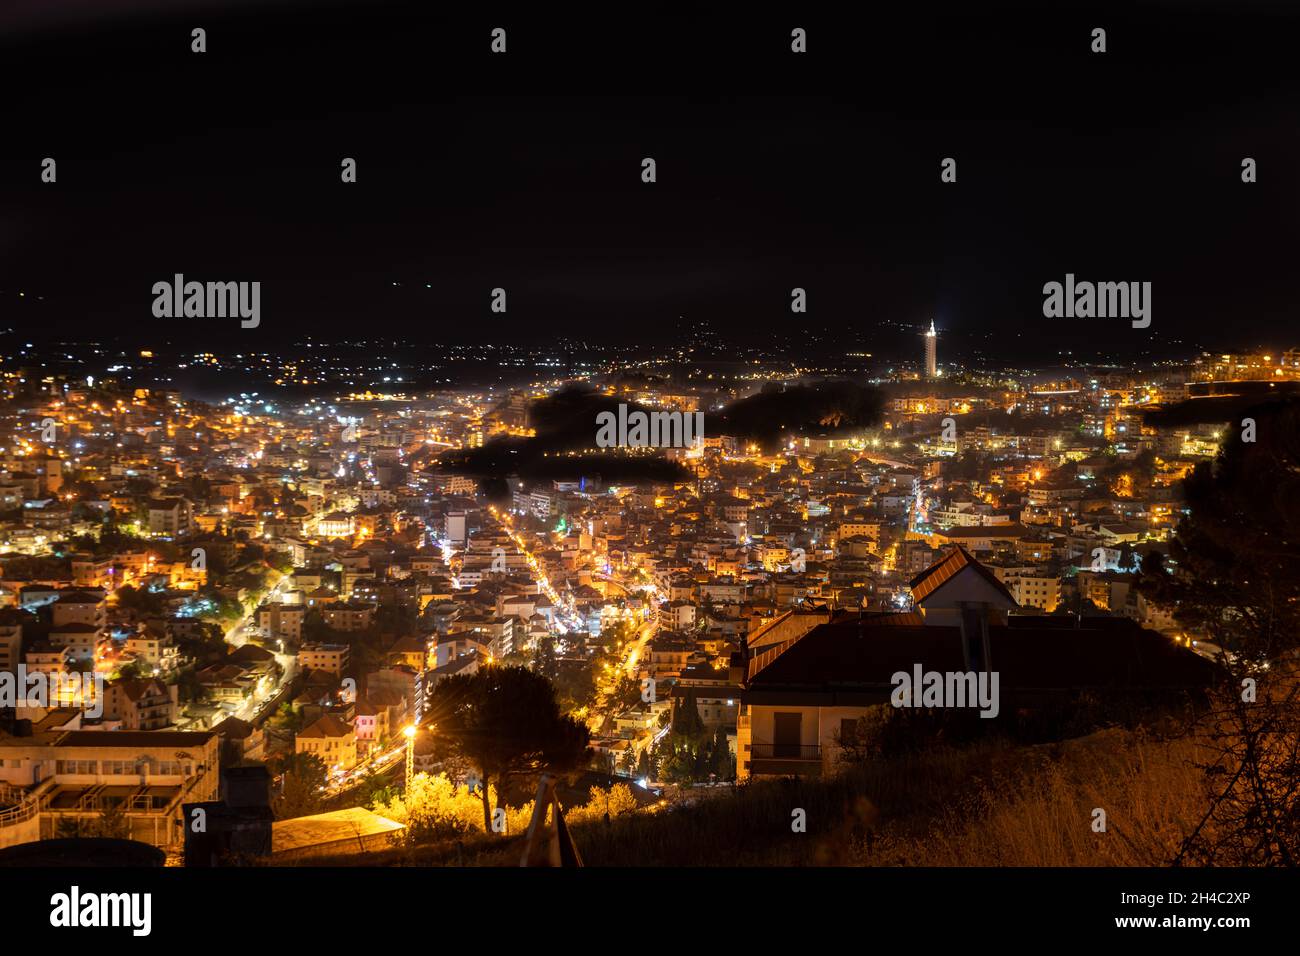 Zahle city at night Stock Photo